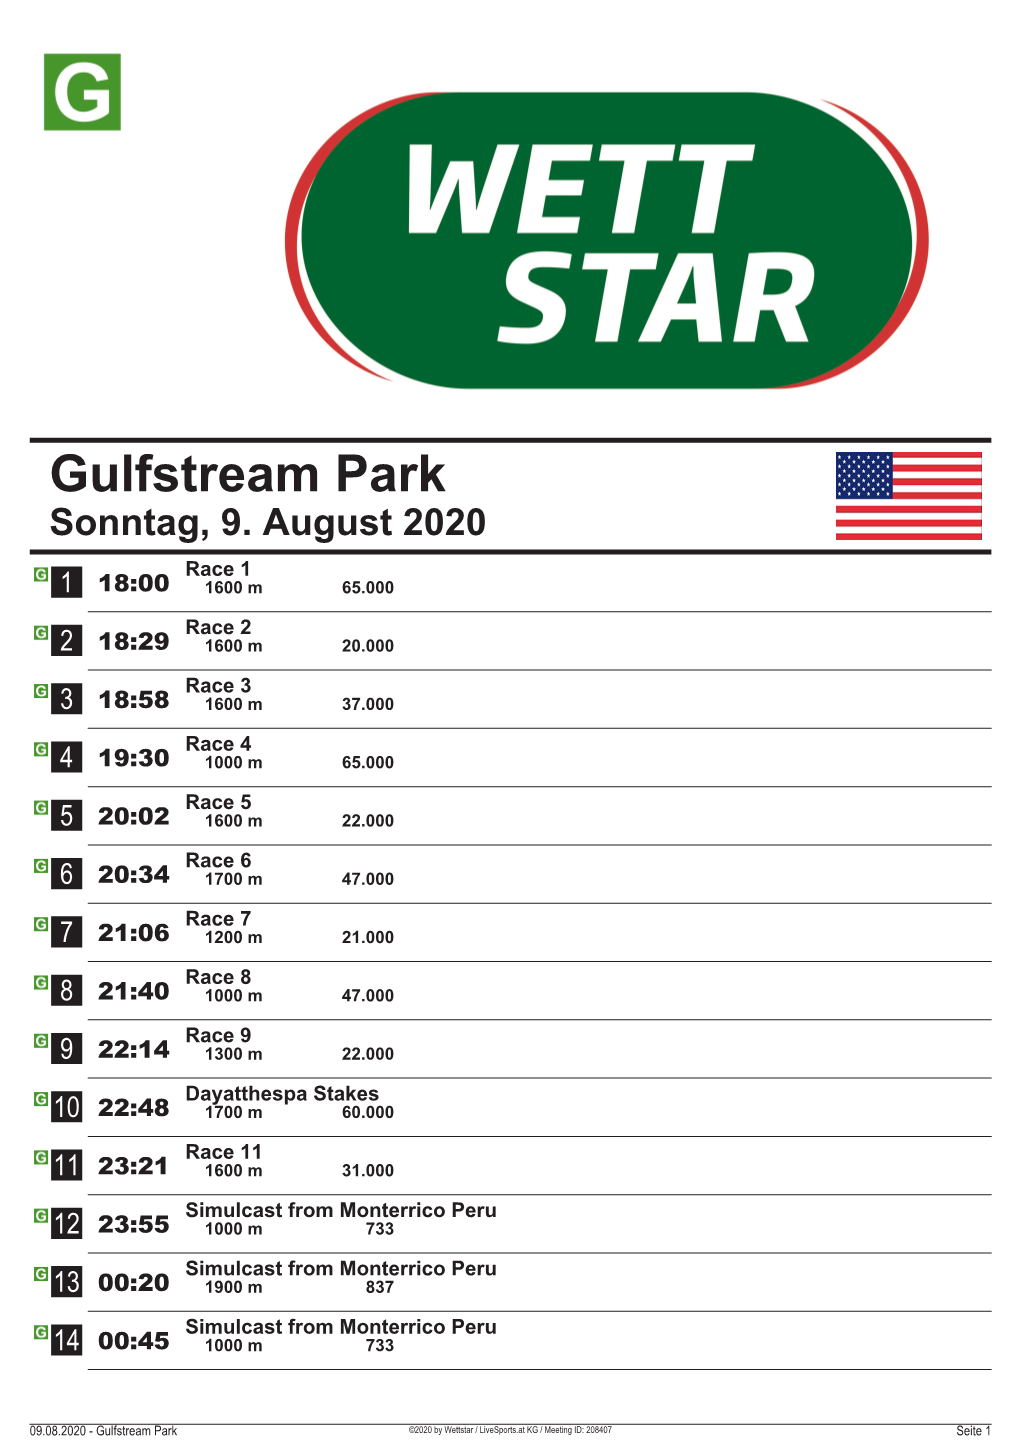 Gulfstream Park Sonntag, 9